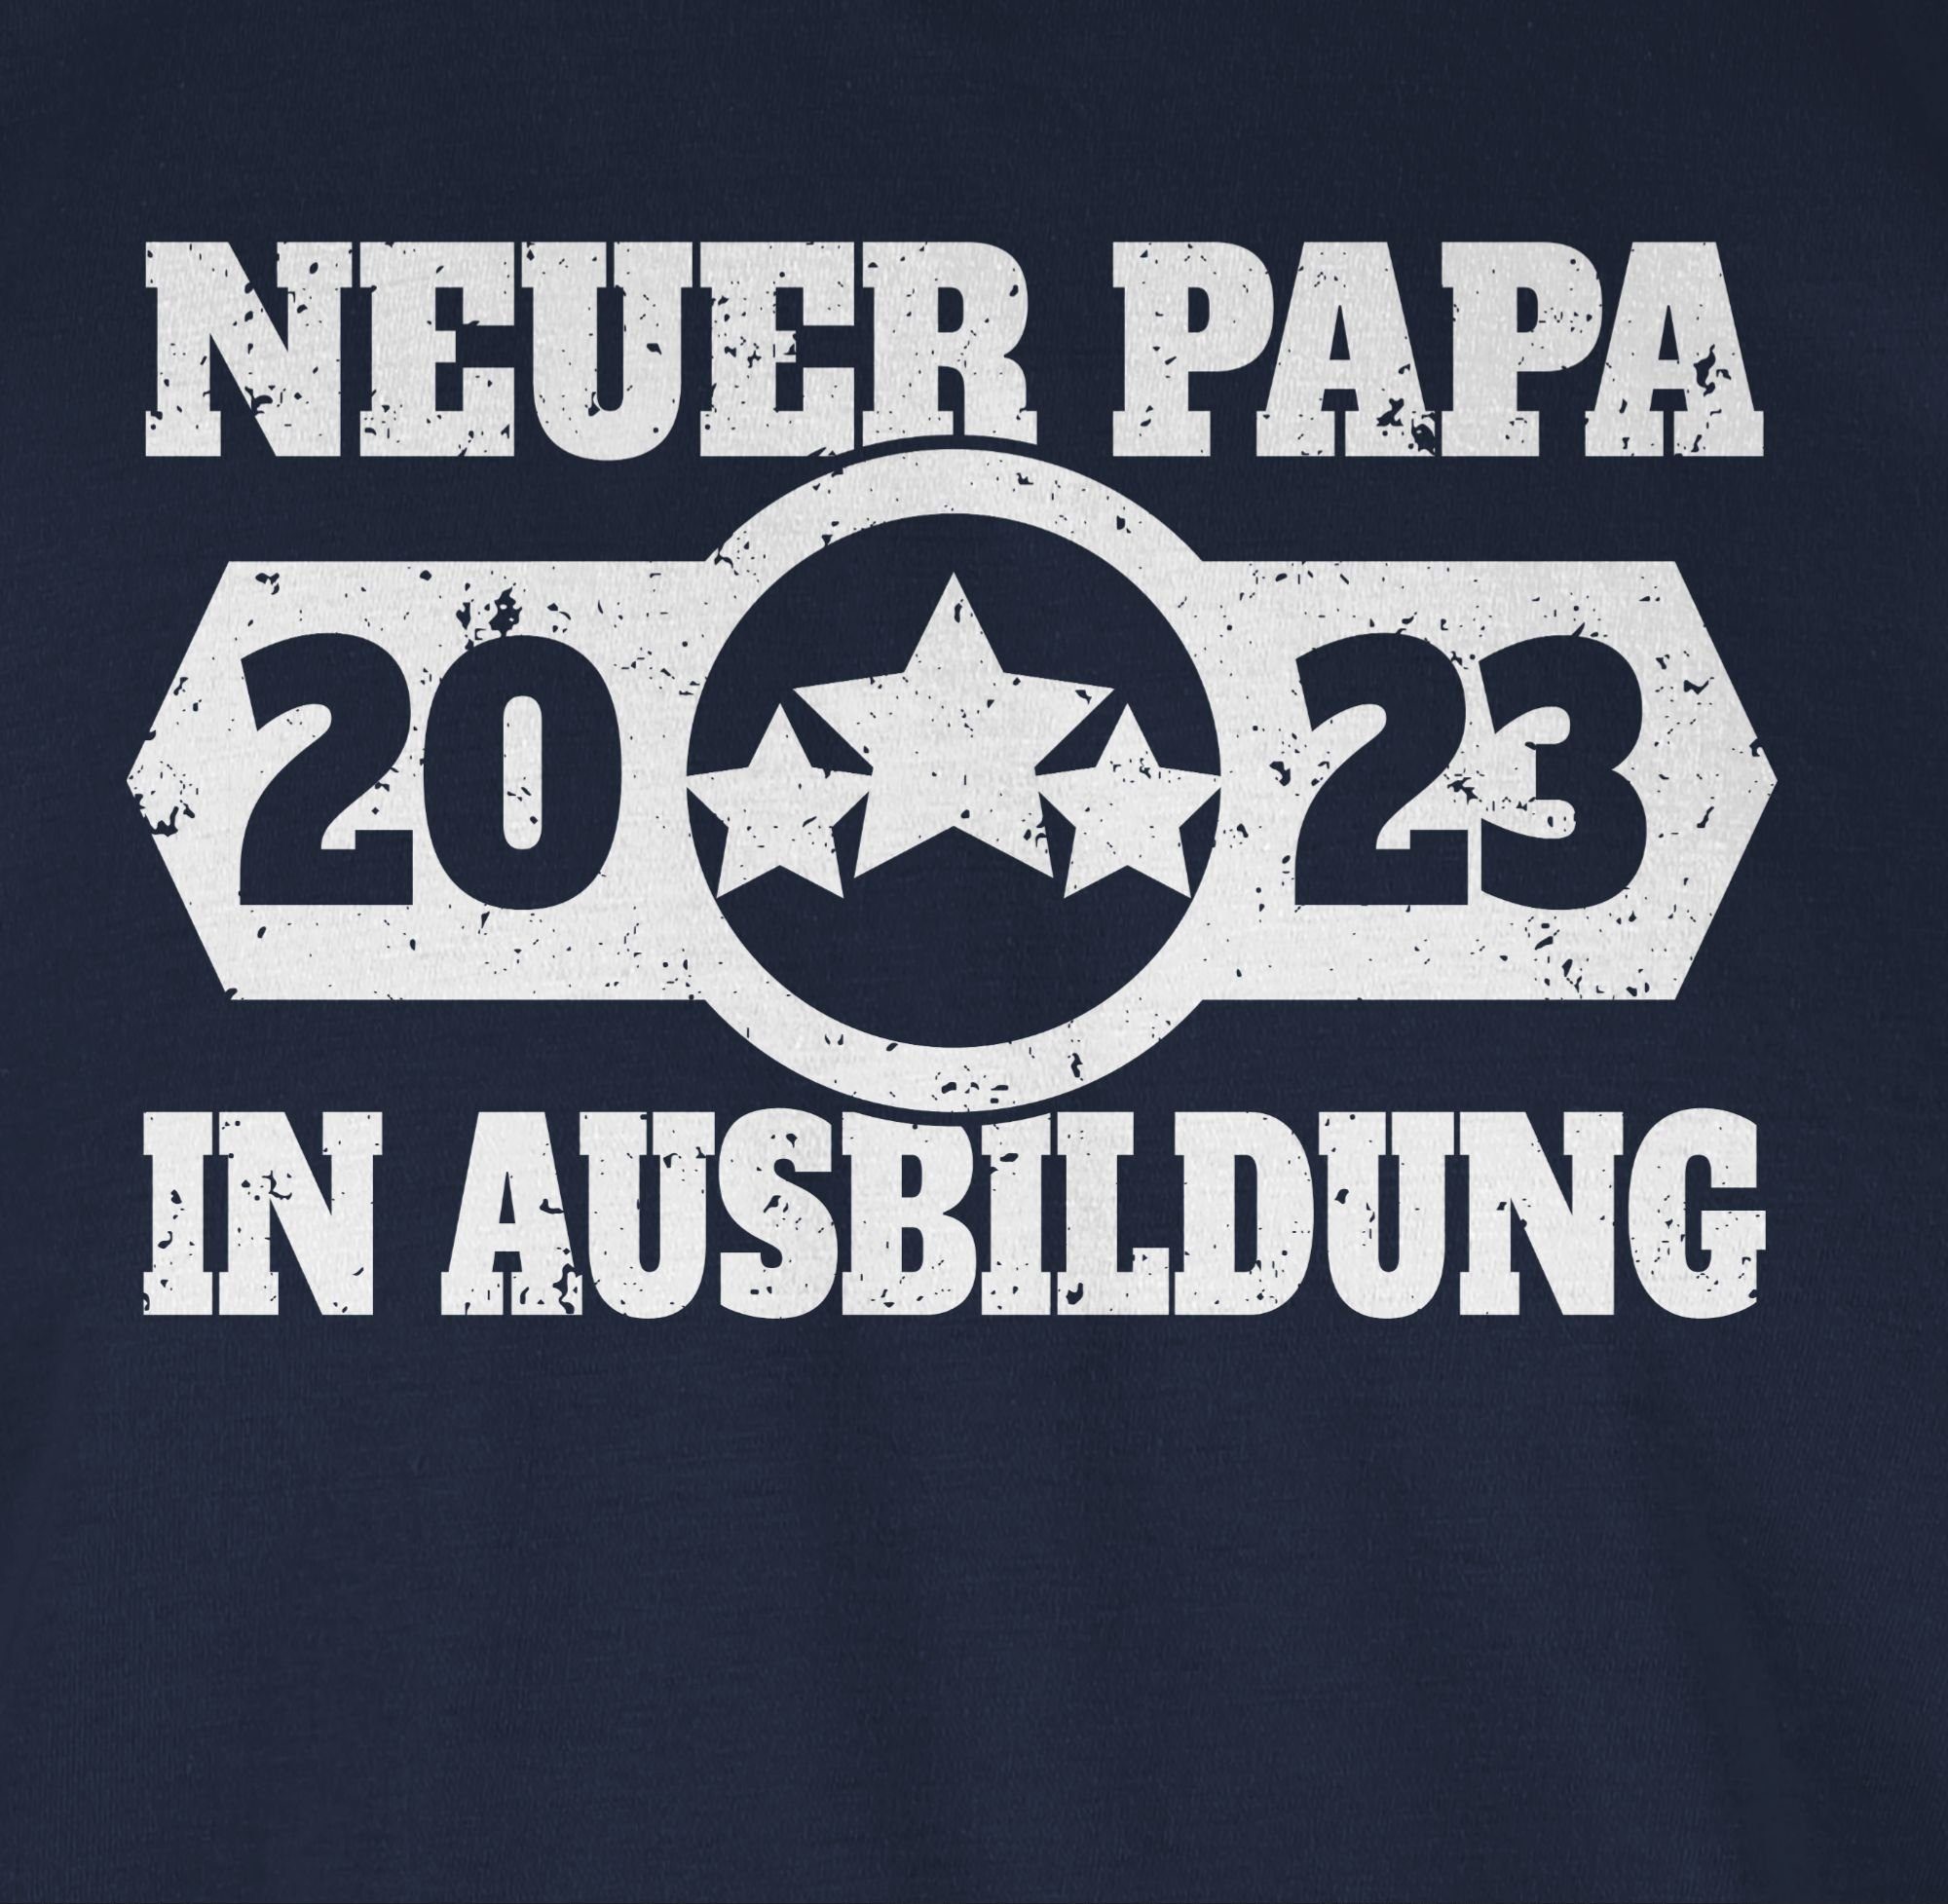 Ausbildung Papa Neuer 01 - für in T-Shirt Vatertag Shirtracer Navy 2023 Blau weiß Papa Geschenk